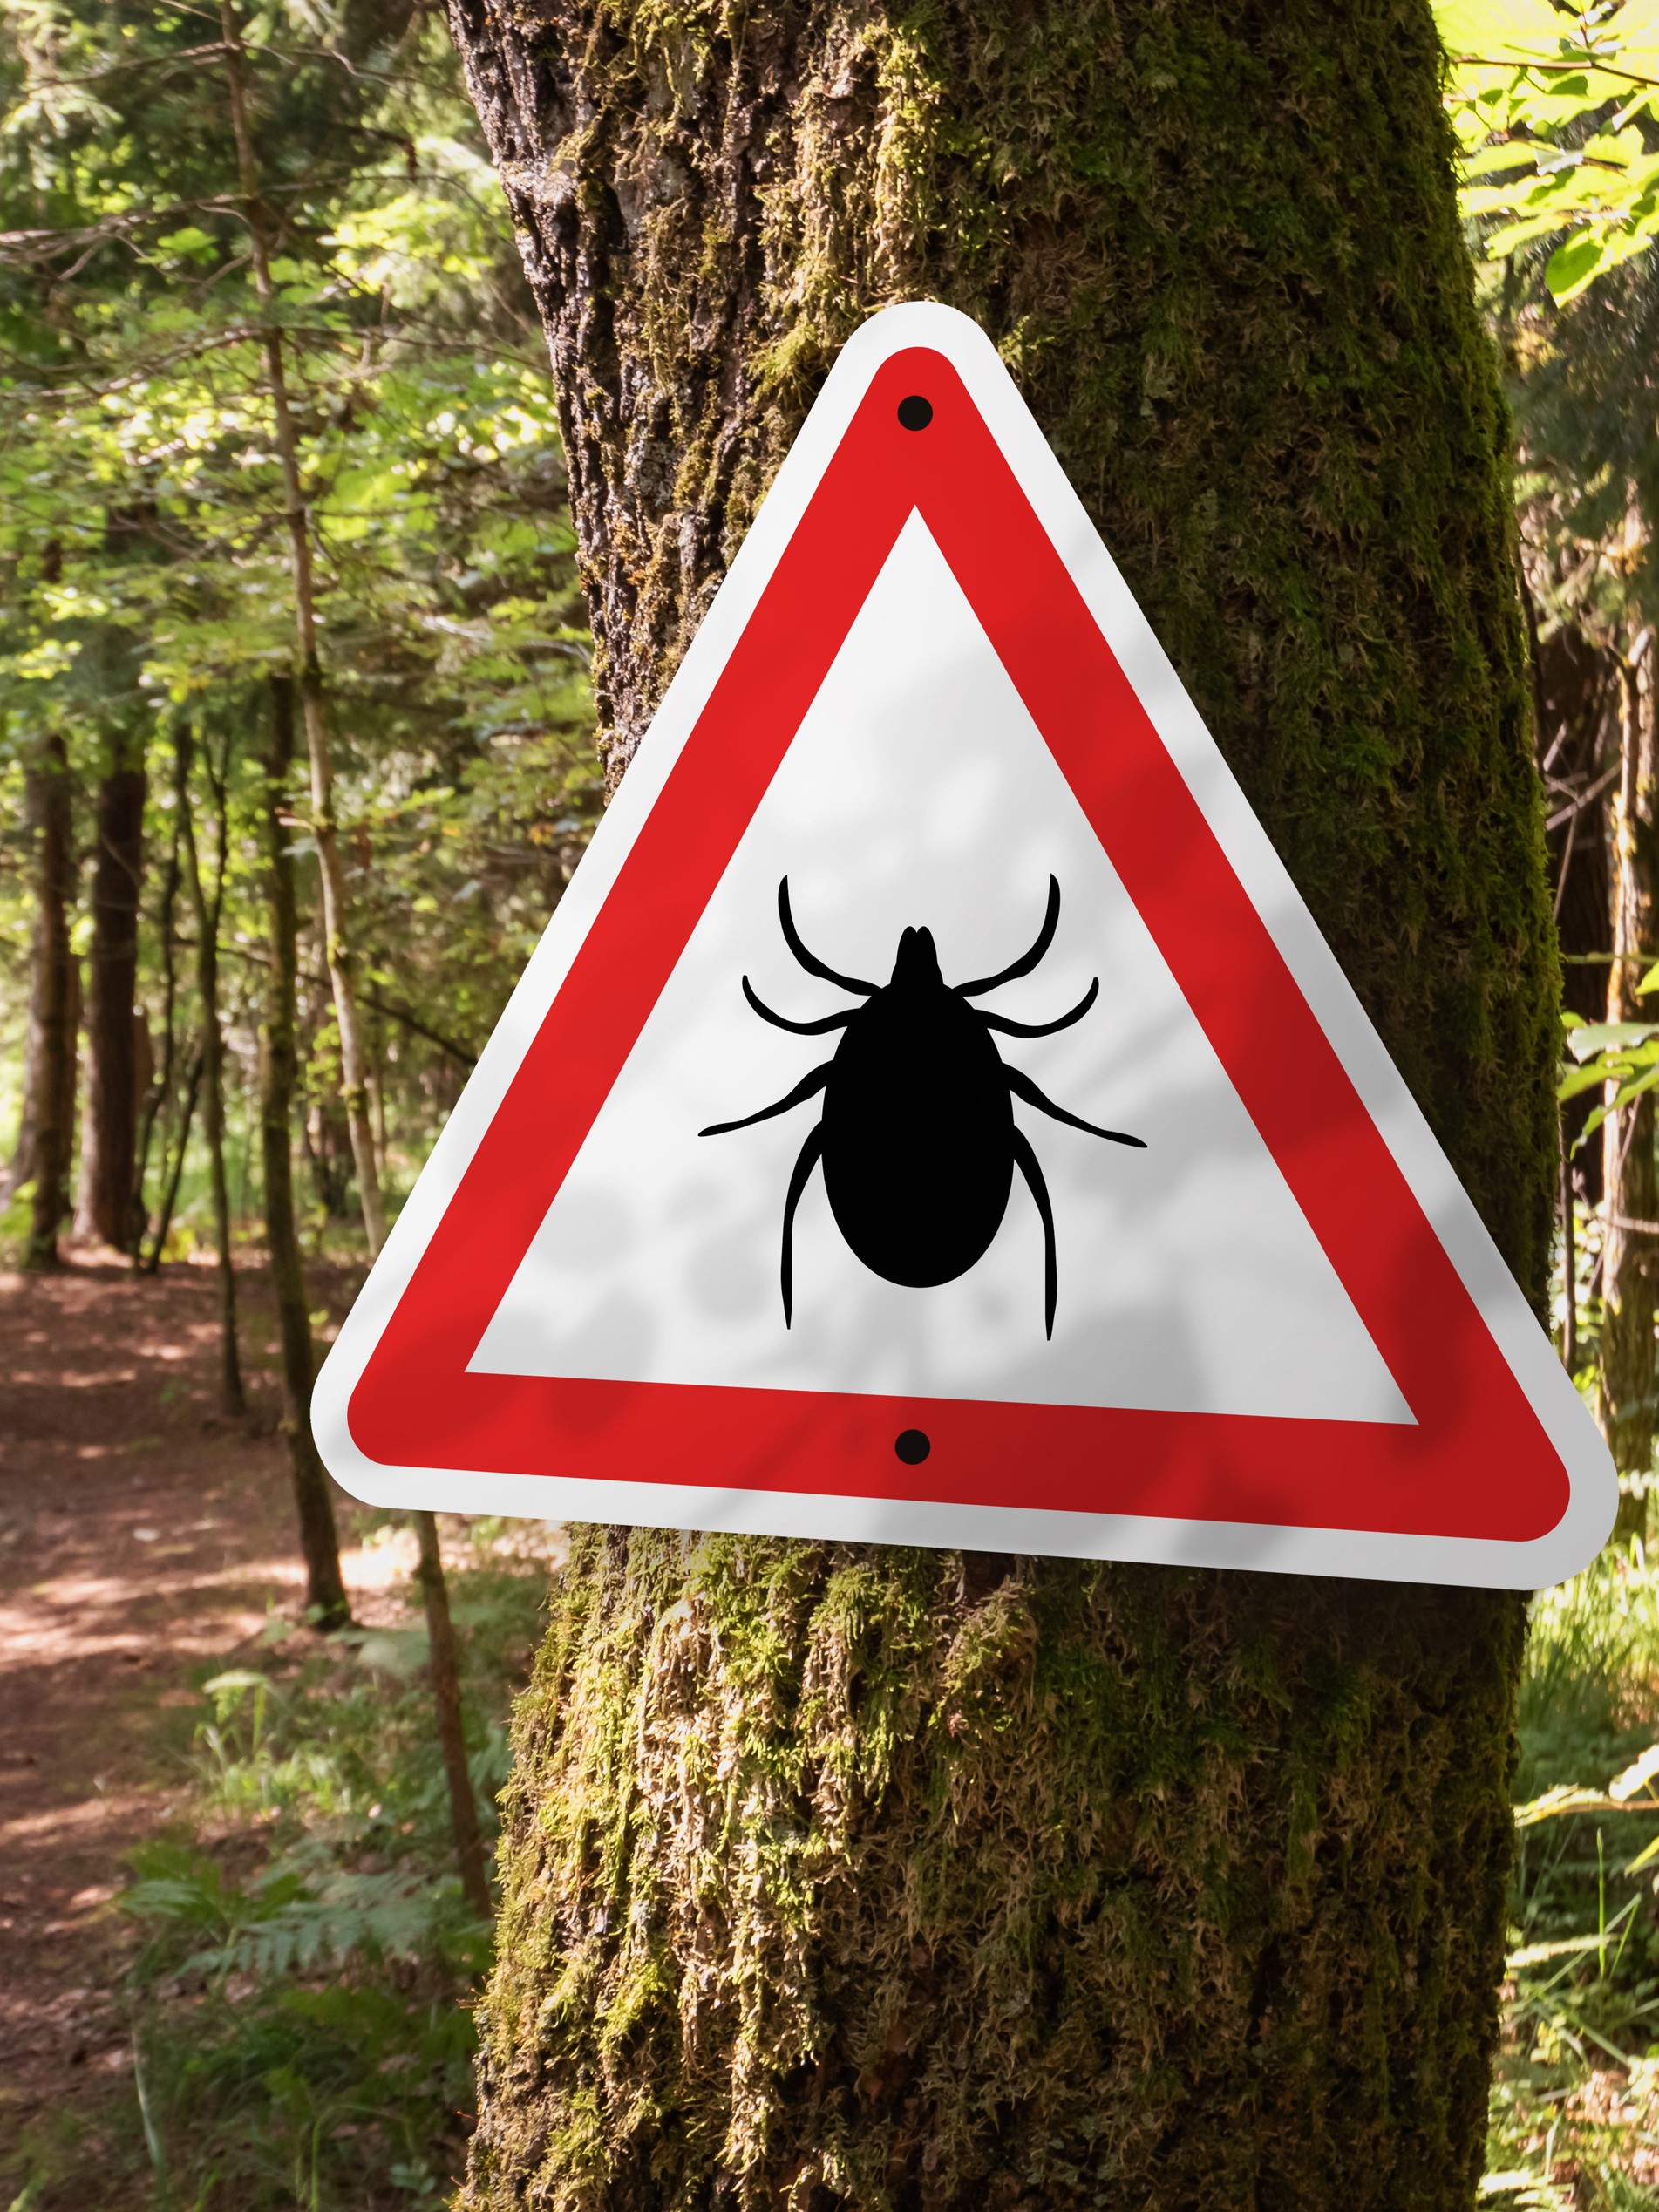 Czerwono-biały znak ostrzegawczy z kleszczem, informujący o zagrożeniu boreliozą.- kleszcze w lesie, zagrożenie boreliozą.